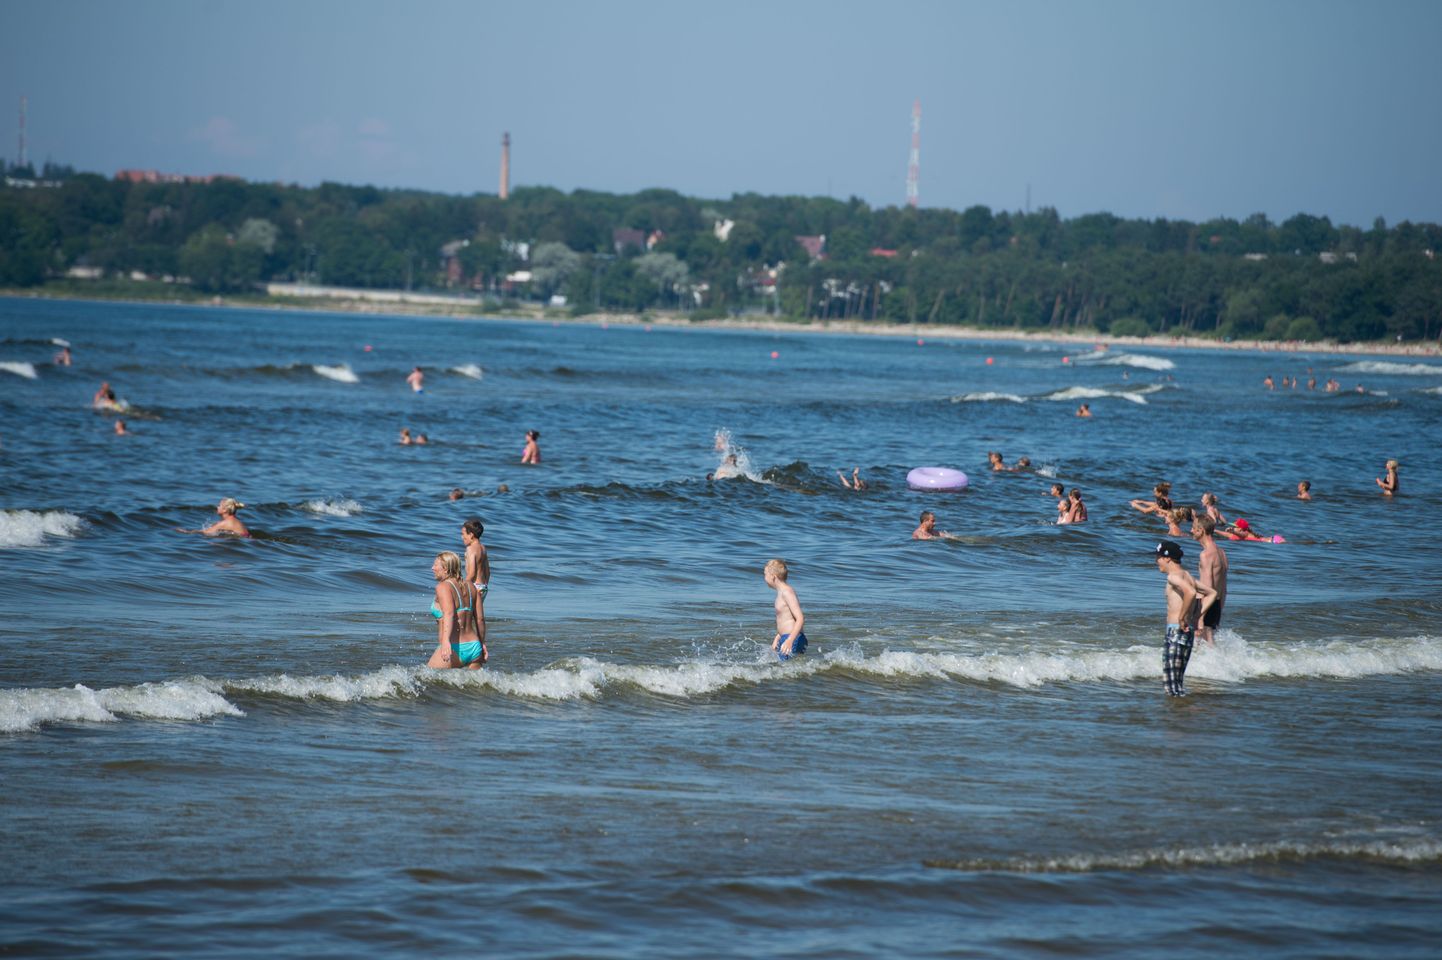 Inimesed otsisid augustikuuma eest jahutust merelainetest.